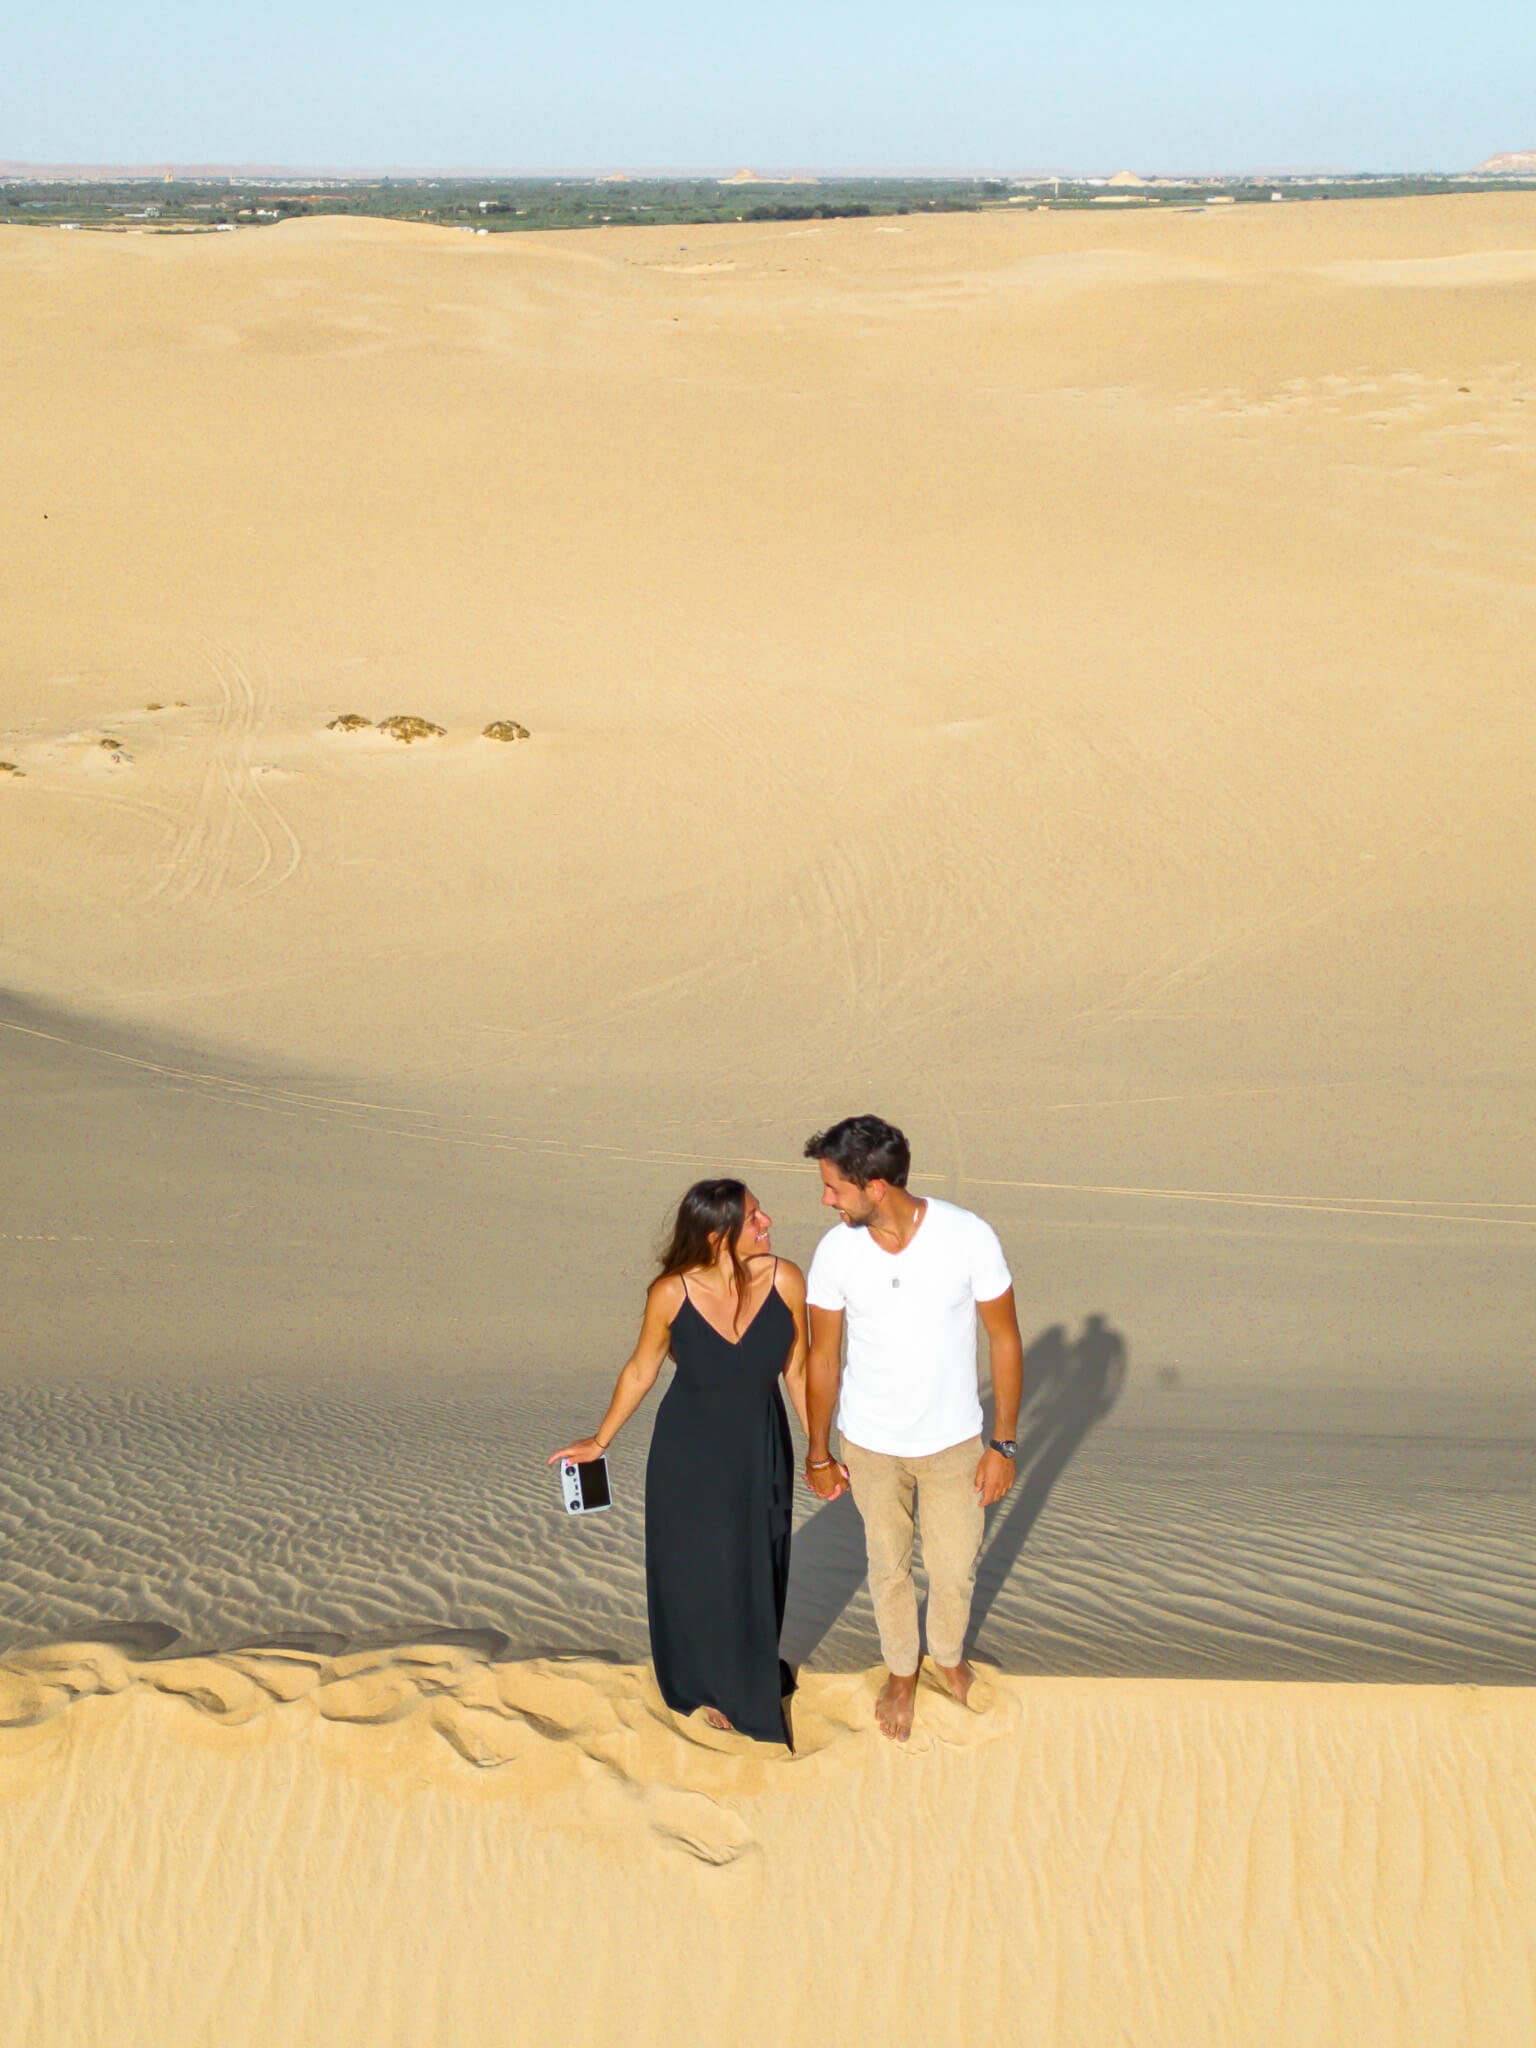 sand dunes in Siwa, Egypt